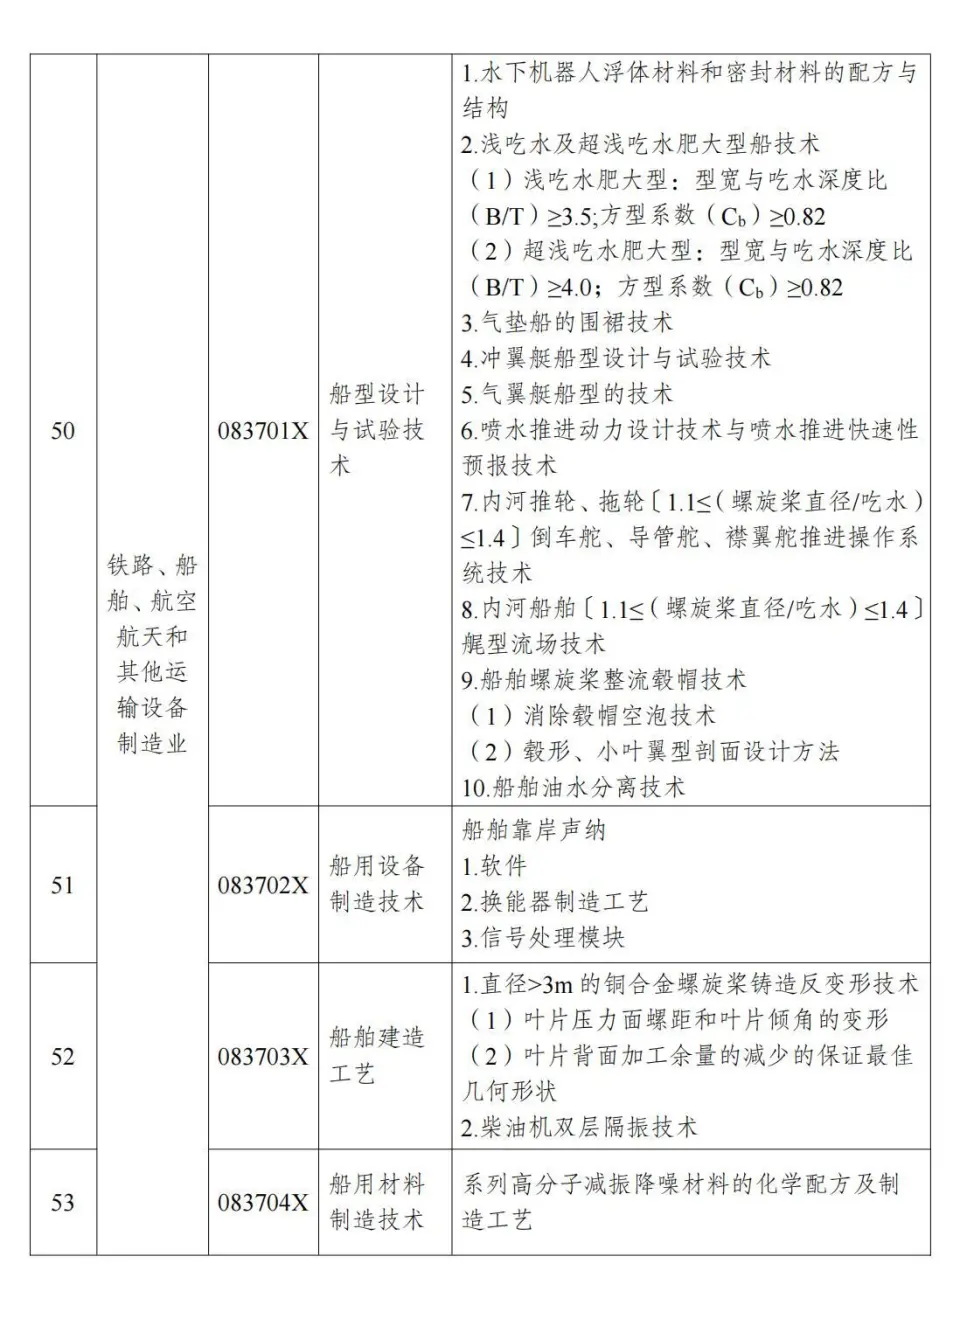 两部分公布《中国制止出口限制出口技术目录》 第14张图片